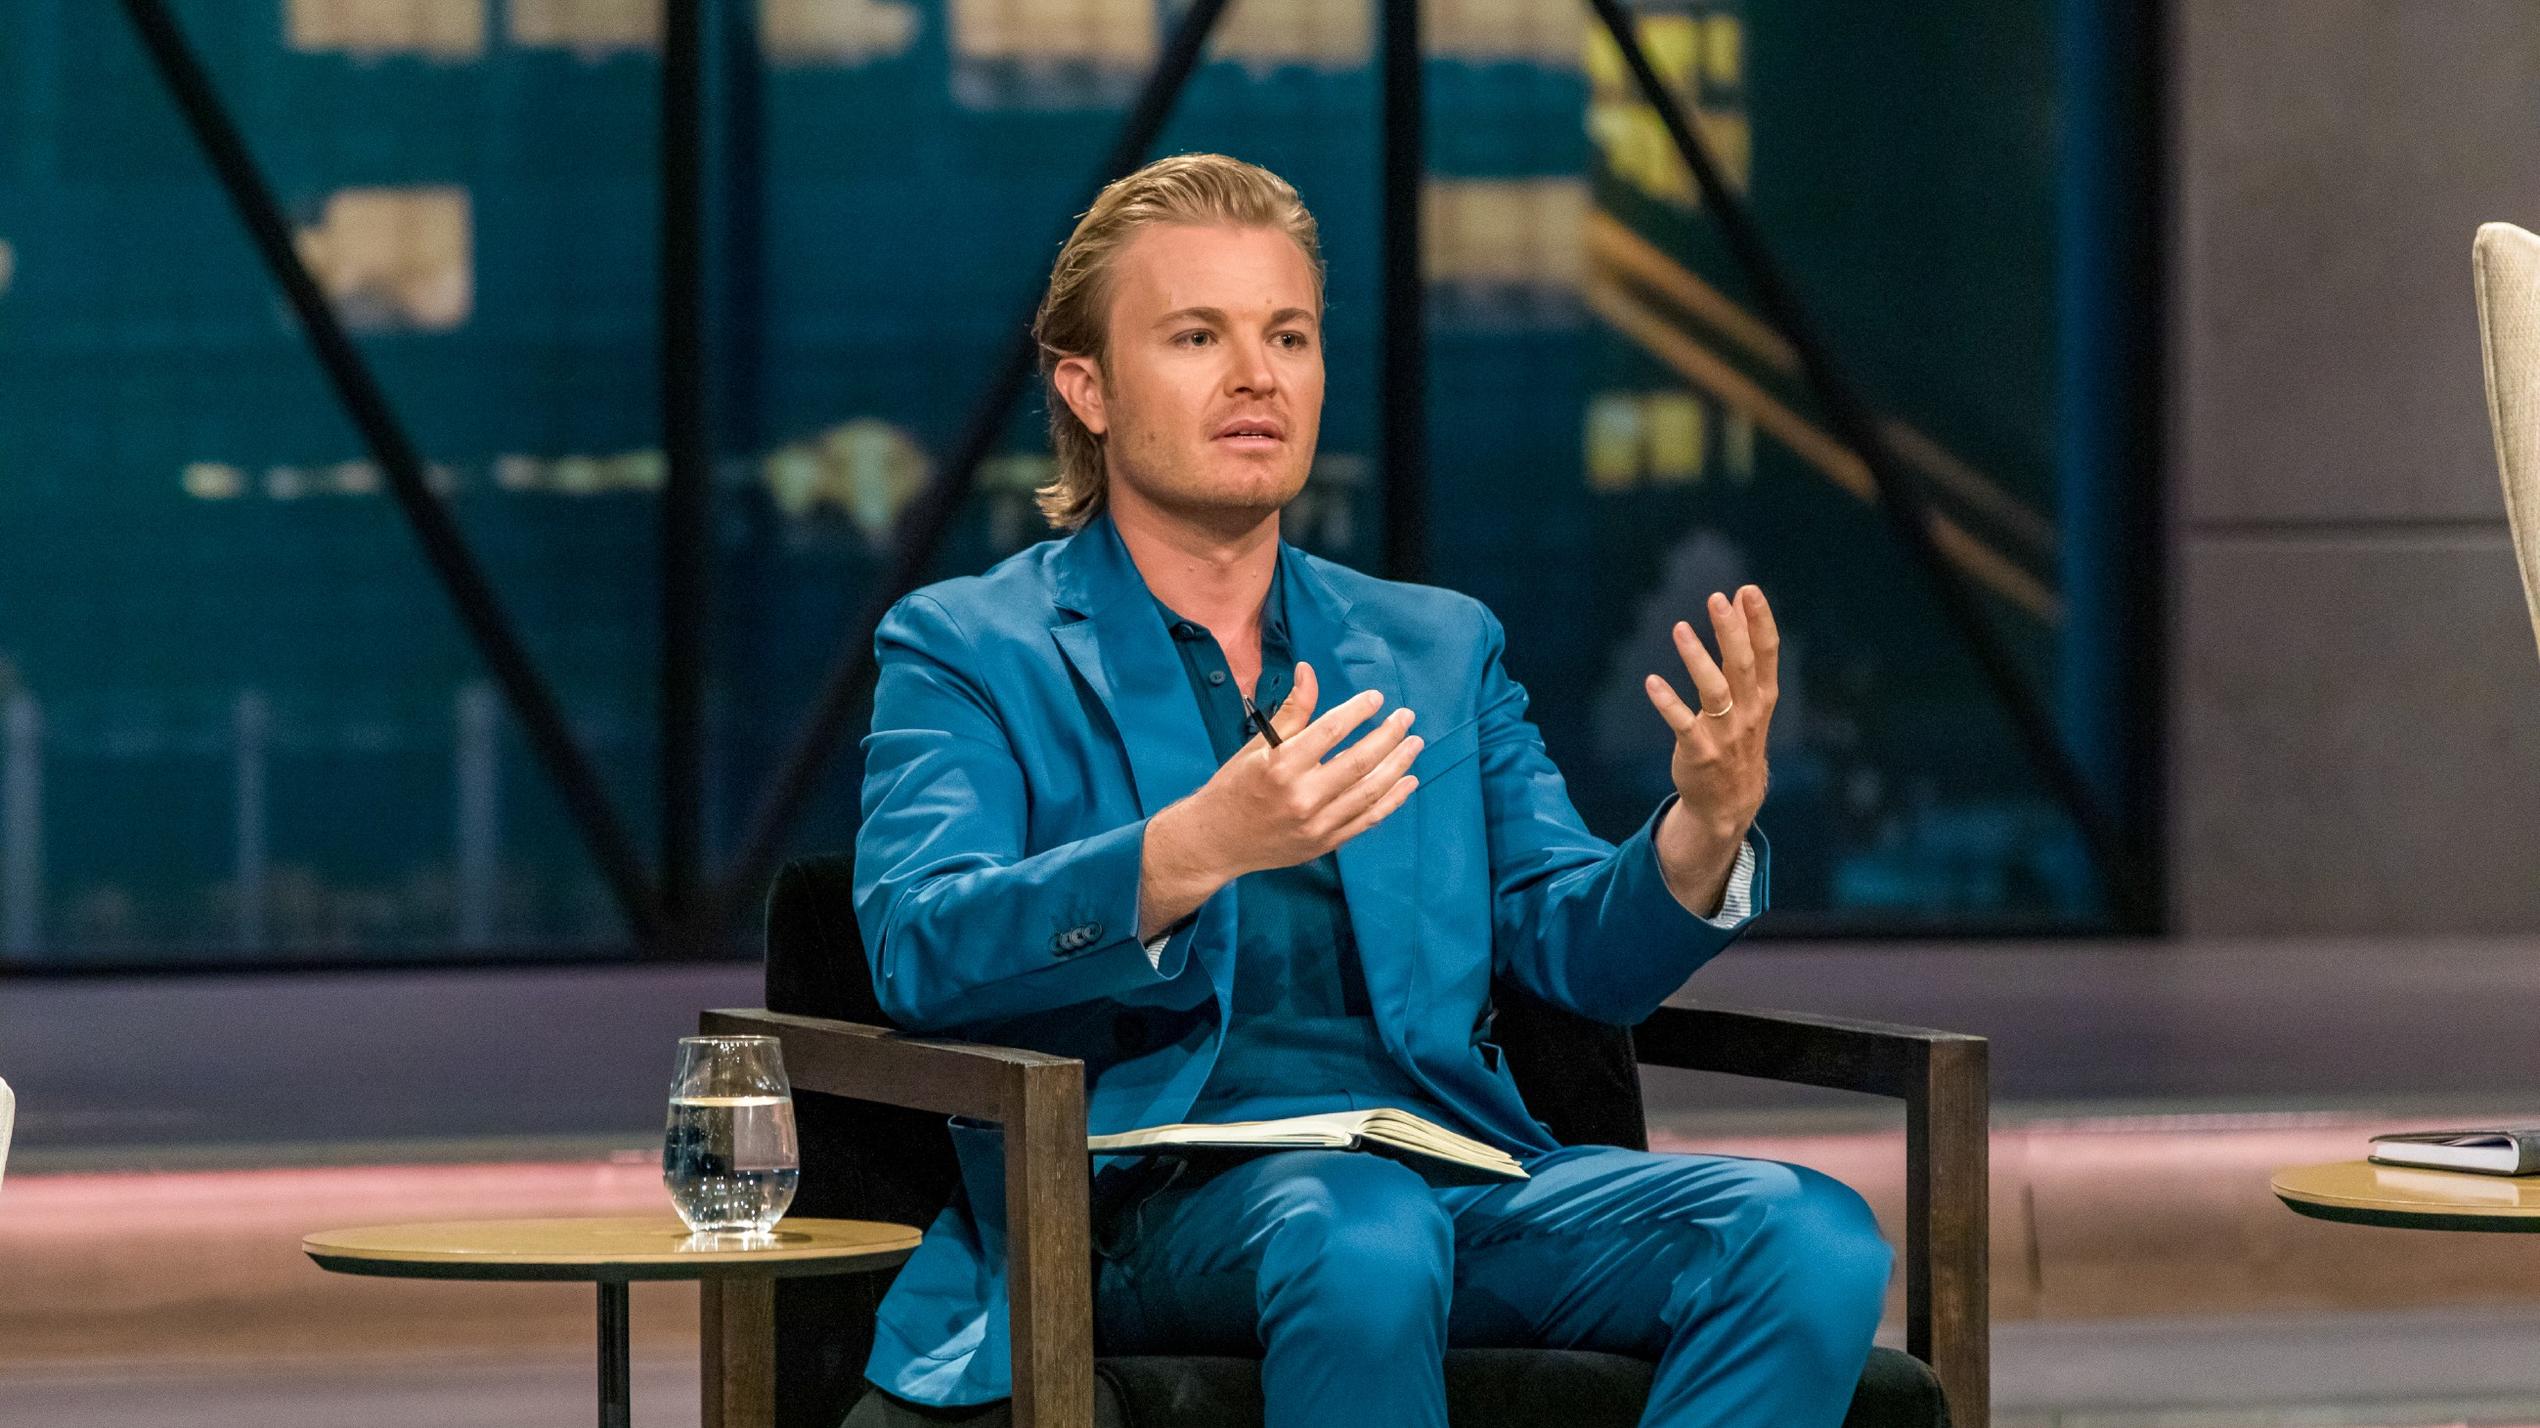 Investor Nico Rosberg nimmt die App zur Behandlung von Menschen mit Adipositas von "Zanadio" genau unter die Lupe.  Die Verwendung des sendungsbezogenen Materials ist nur mit dem Hinweis und Verlinkung auf TVNOW gestattet.